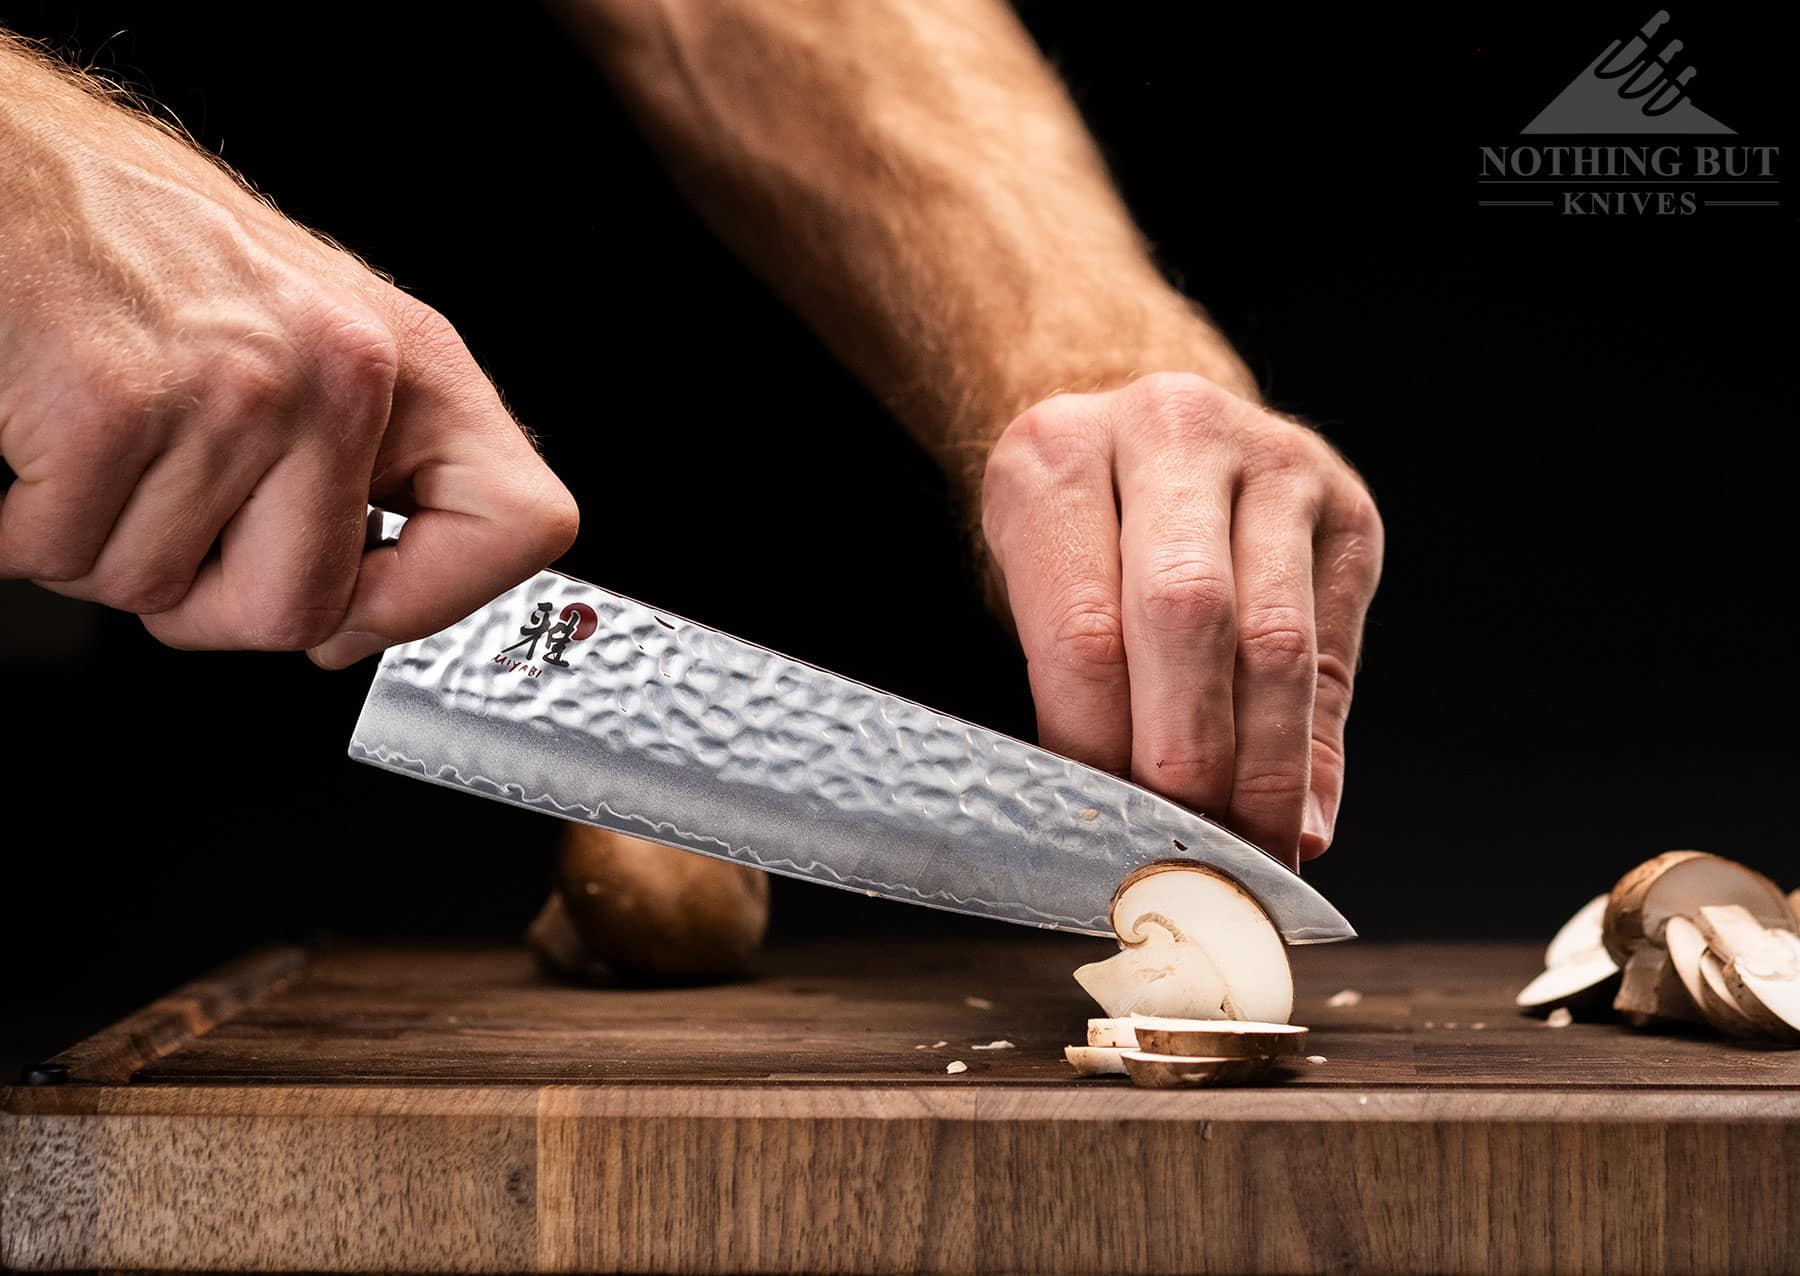 The Miyabi Mizu SG2 8 inch chef knife on a wood cutting board.